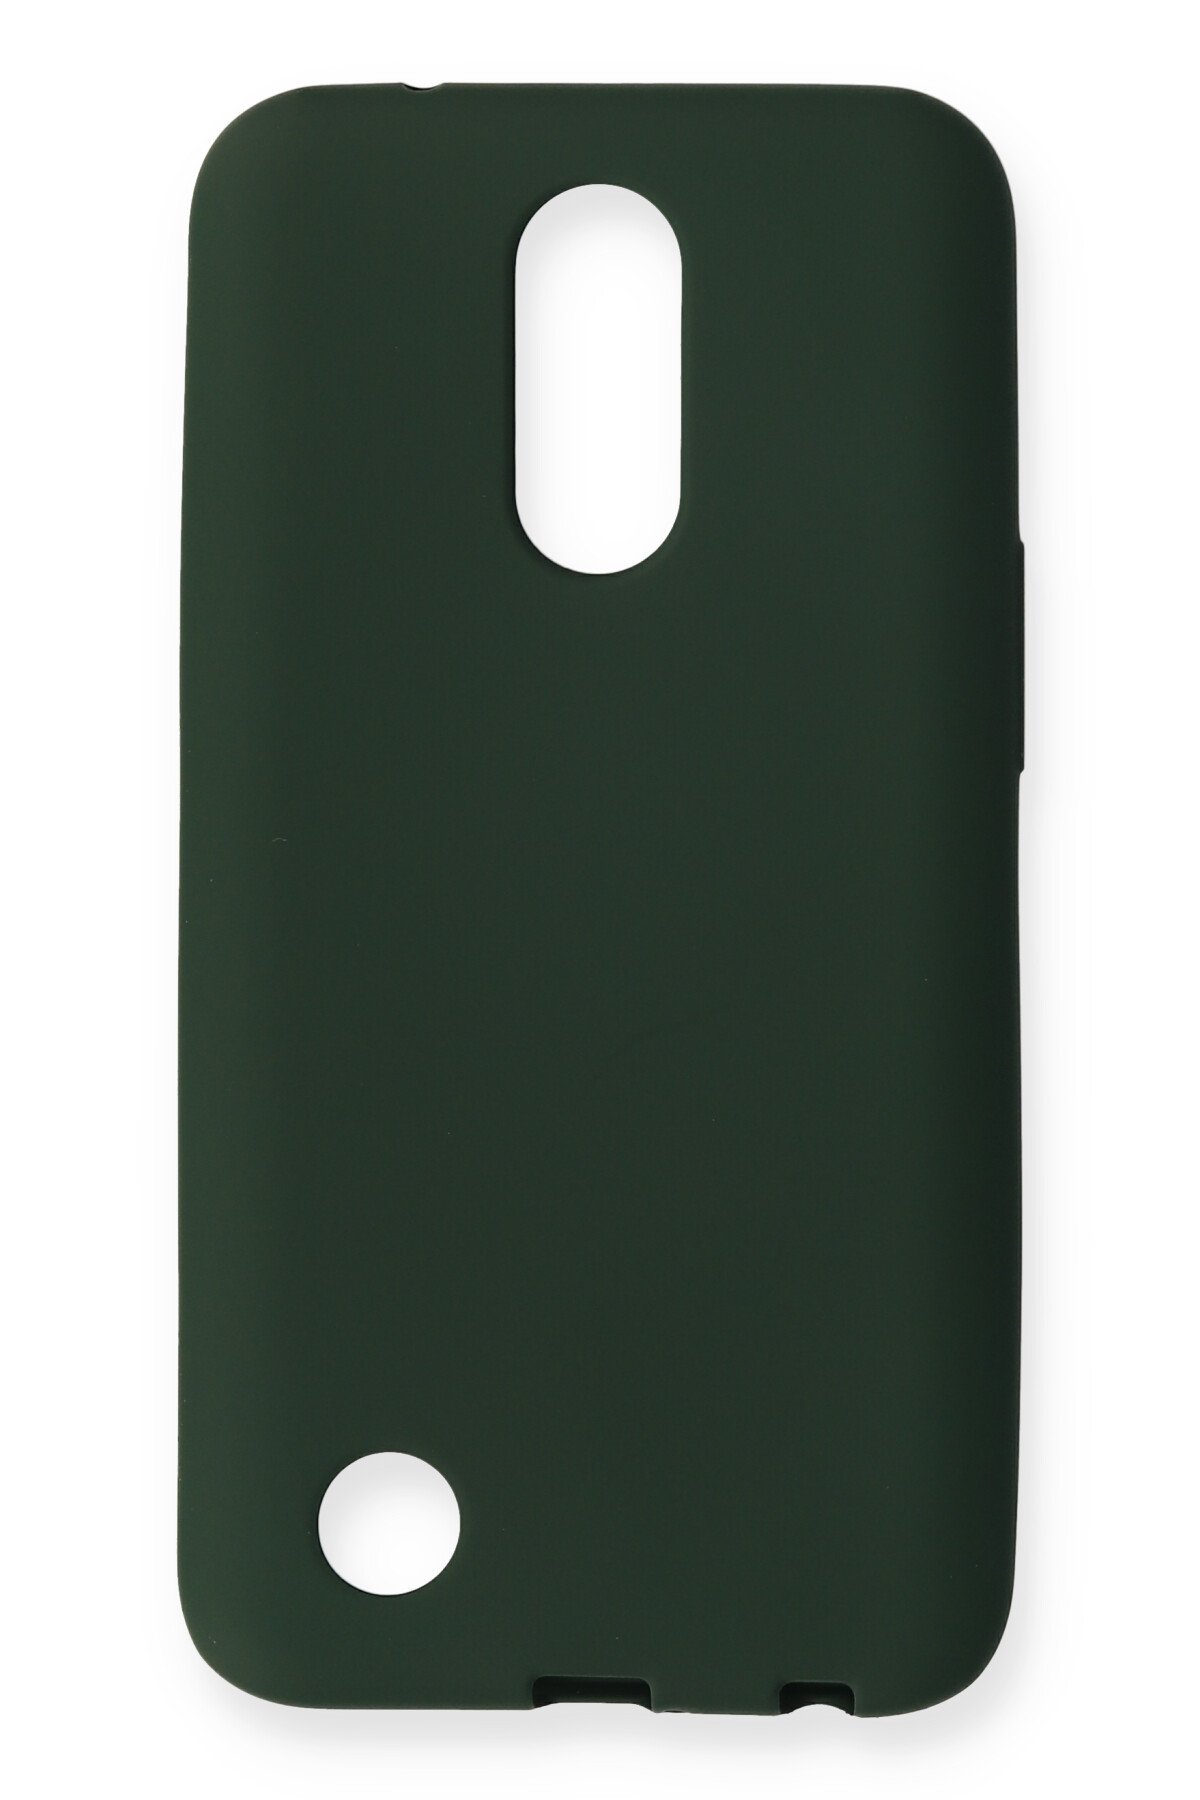 Newface LG K10 2017 Kılıf First Silikon - Koyu Yeşil